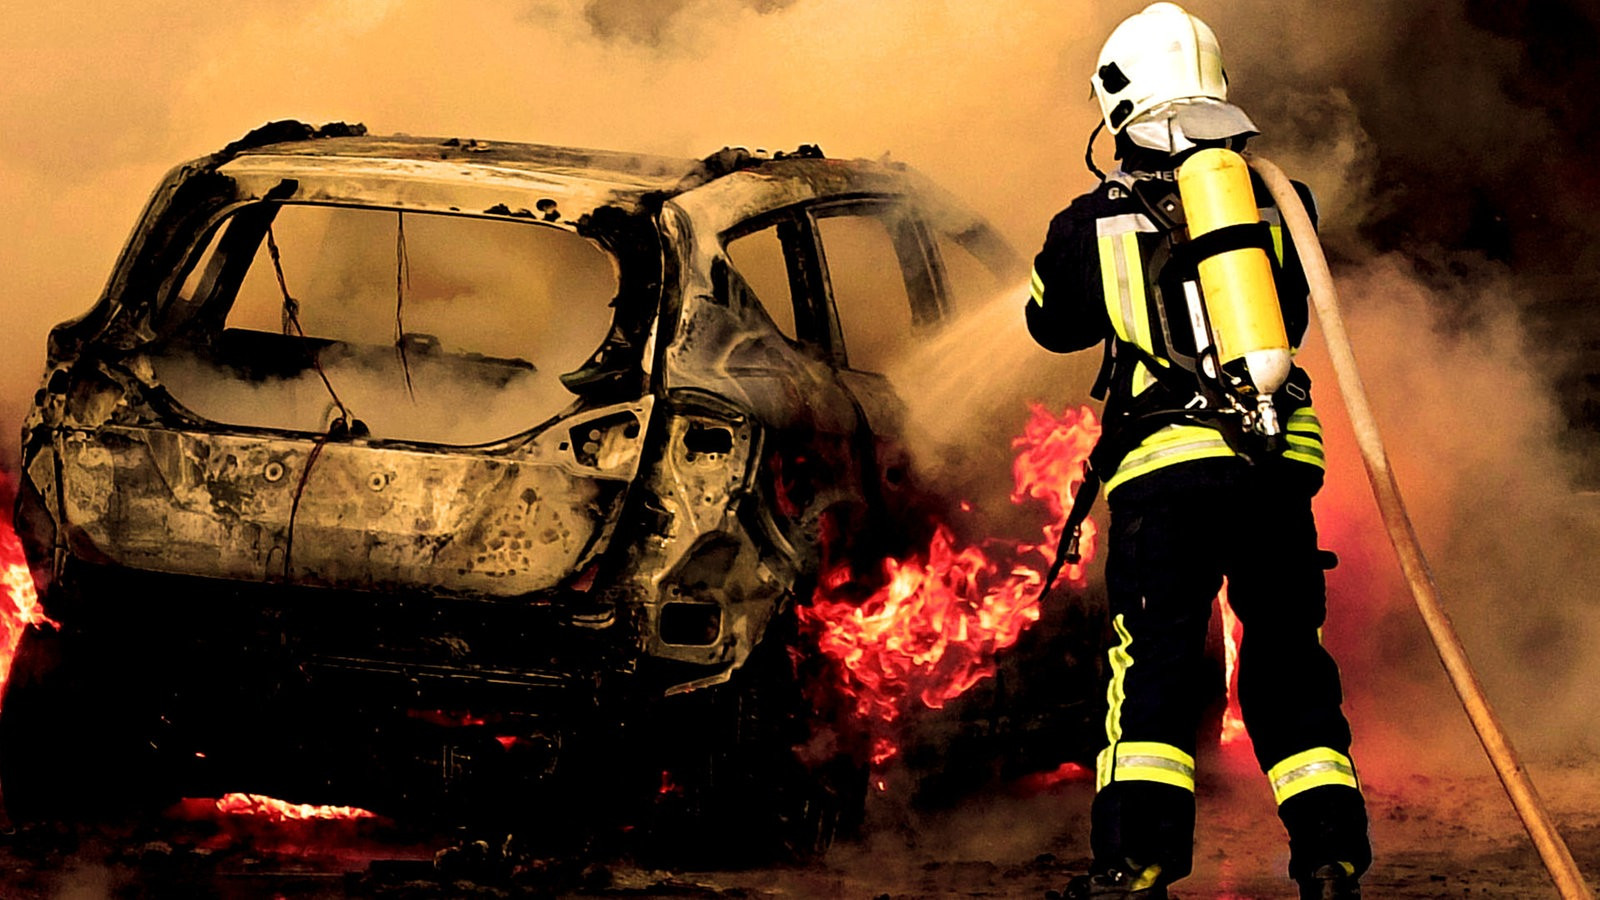 Ausmalbilder Feuer Und Flamme
 Video Feuer & Flamme – Mit Feuerwehrmännern im Einsatz 6